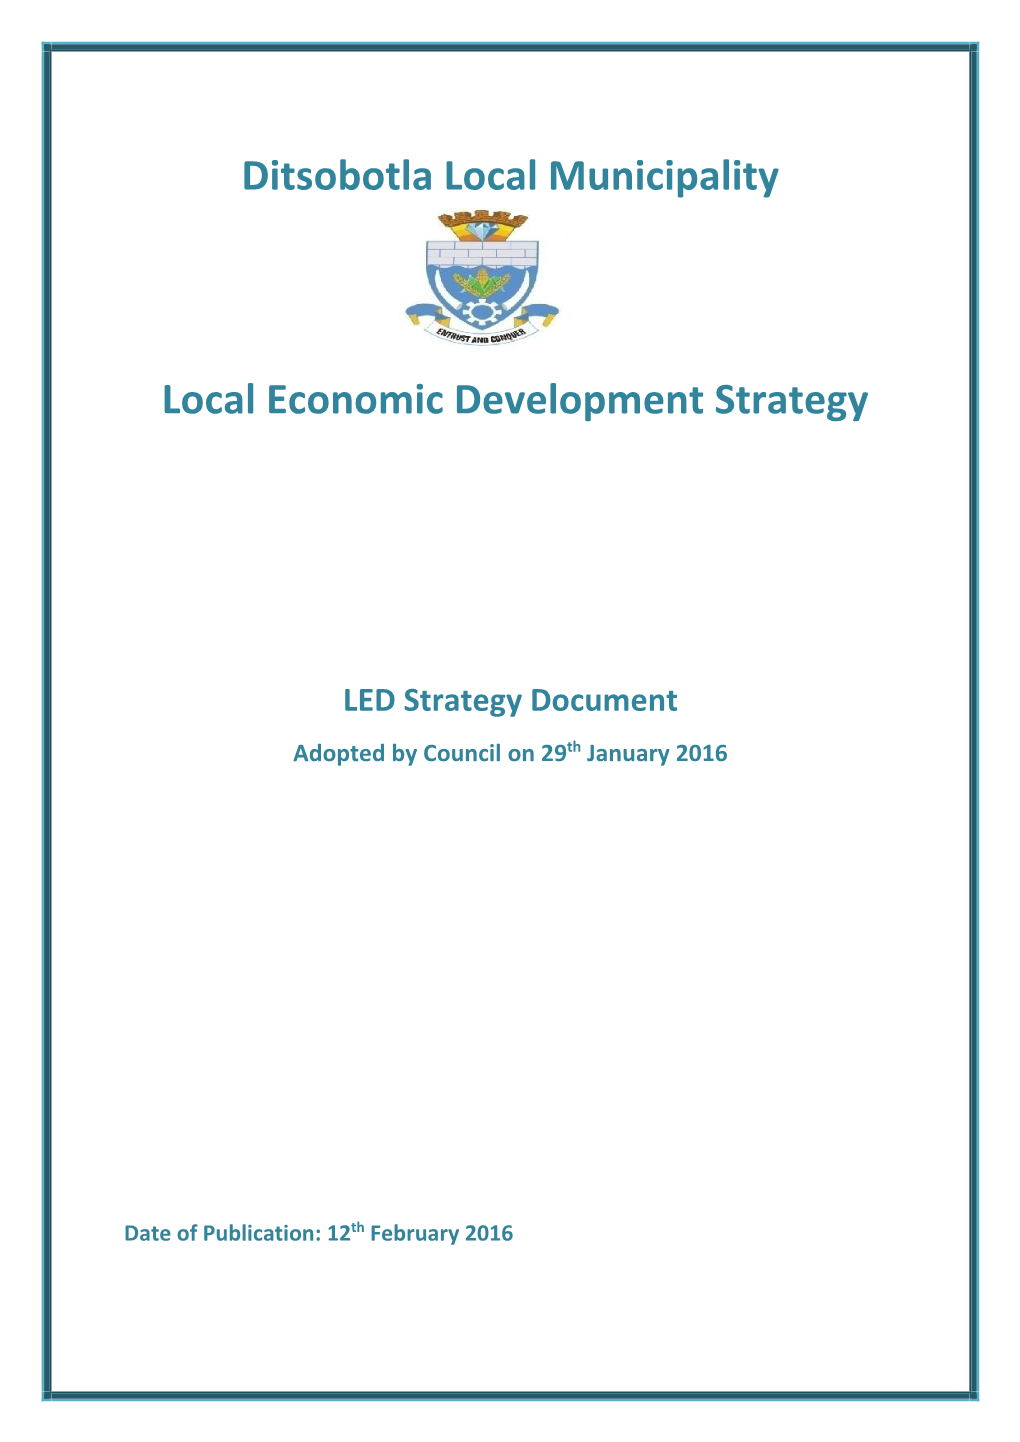 Ditsobotla Local Municipality Local Economic Development Strategy